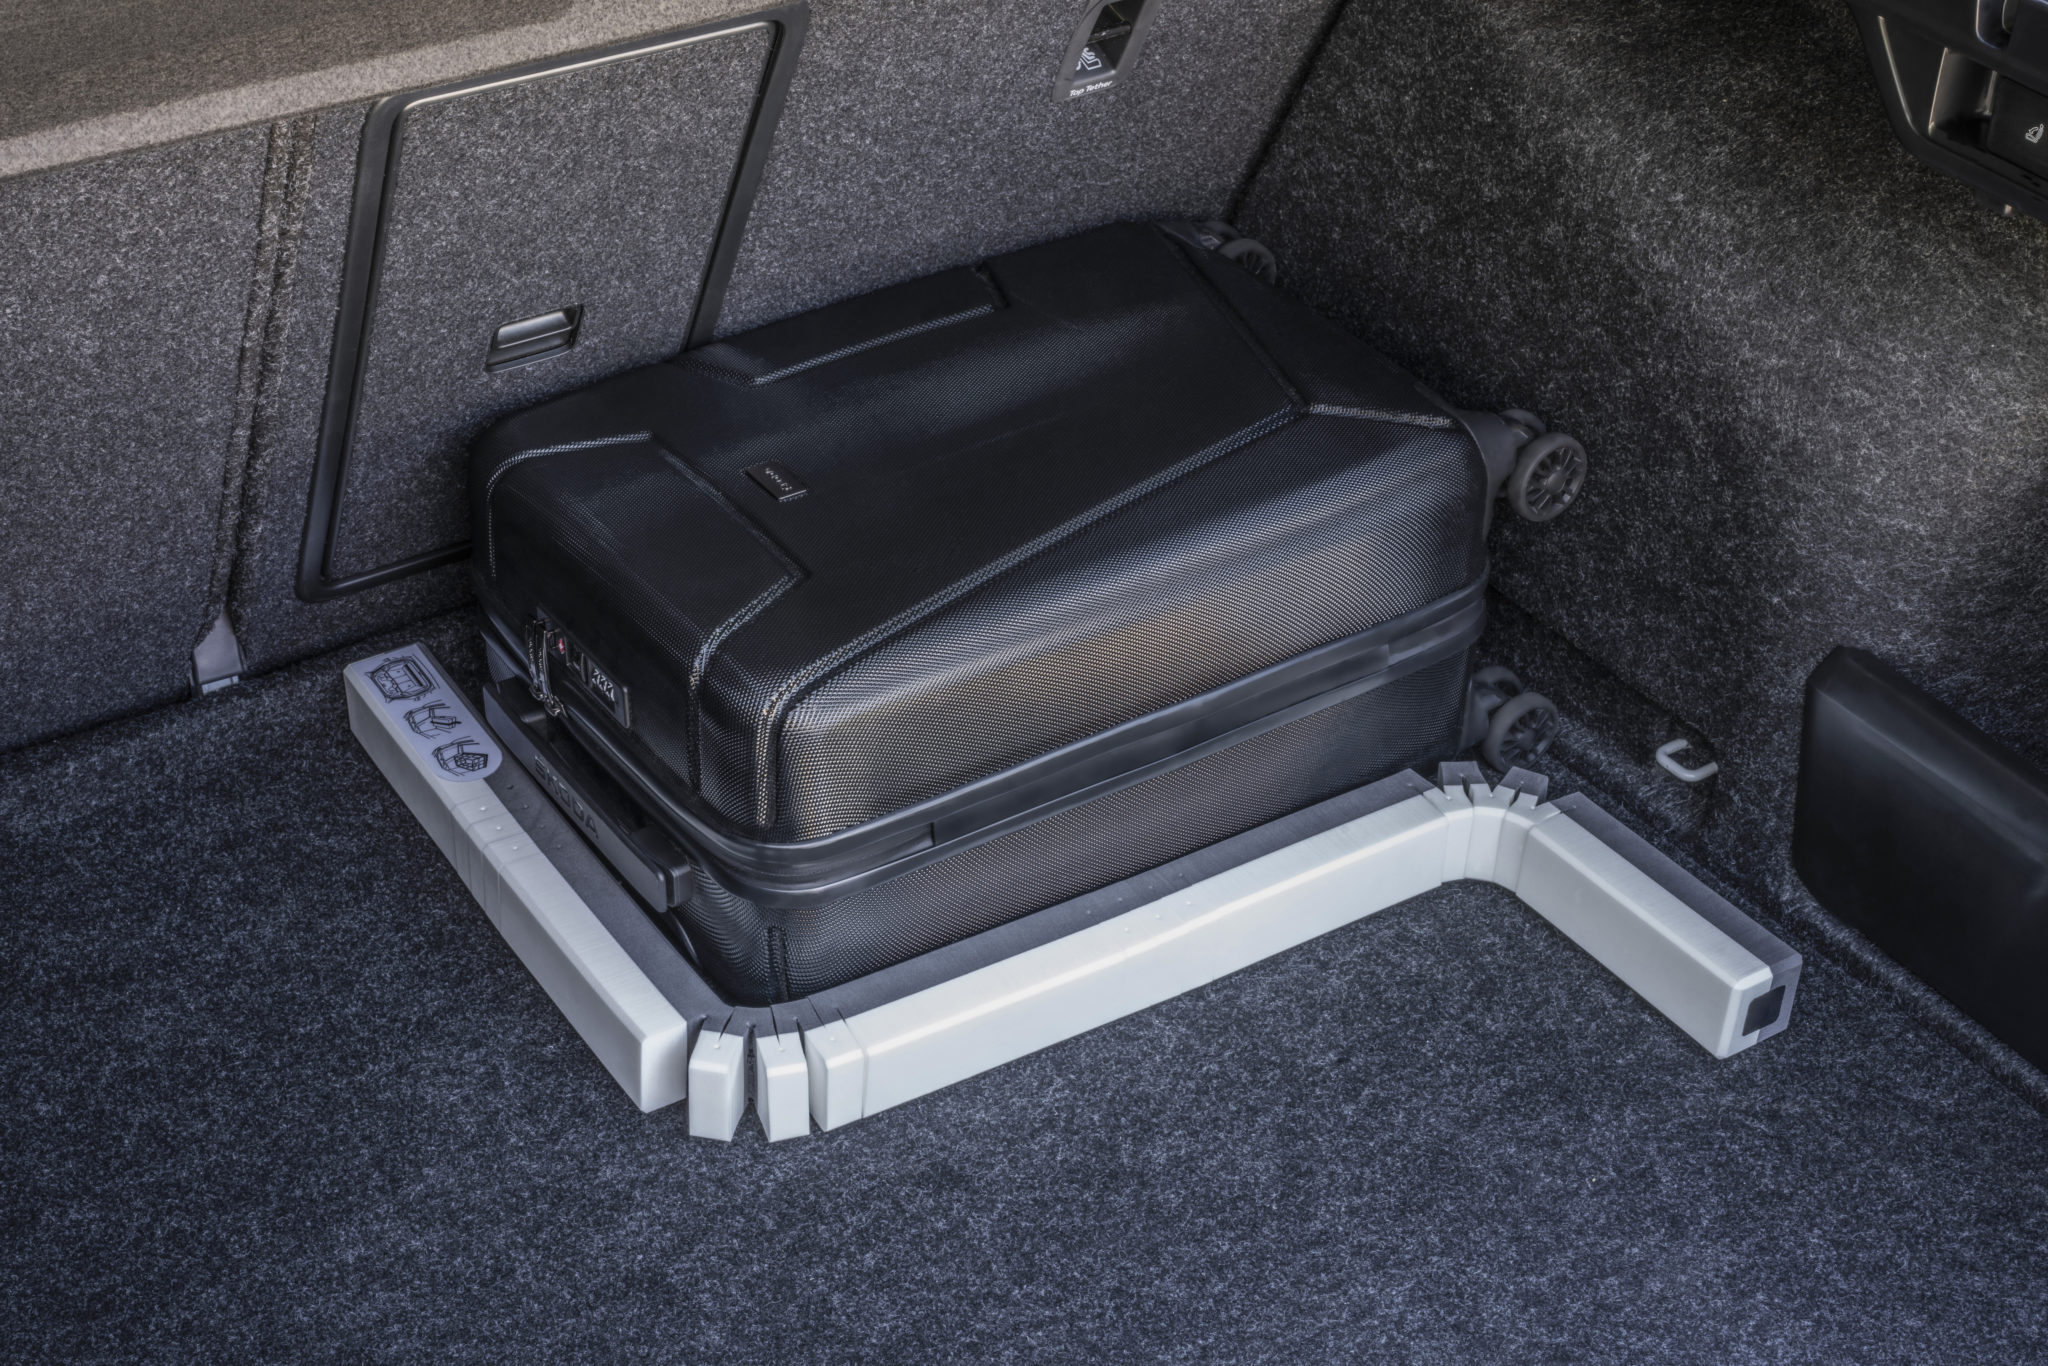 Flexibilný prvok slúžiaci na bezpečné upevnenie nákladu  v batožinovom priestore. Vďaka jeho ohybným kĺbom ho  je možné prispôsobiť tvaru batožiny, upevniť k podlahe pomocou suchých zipsov a tým predísť pohybu nákladu